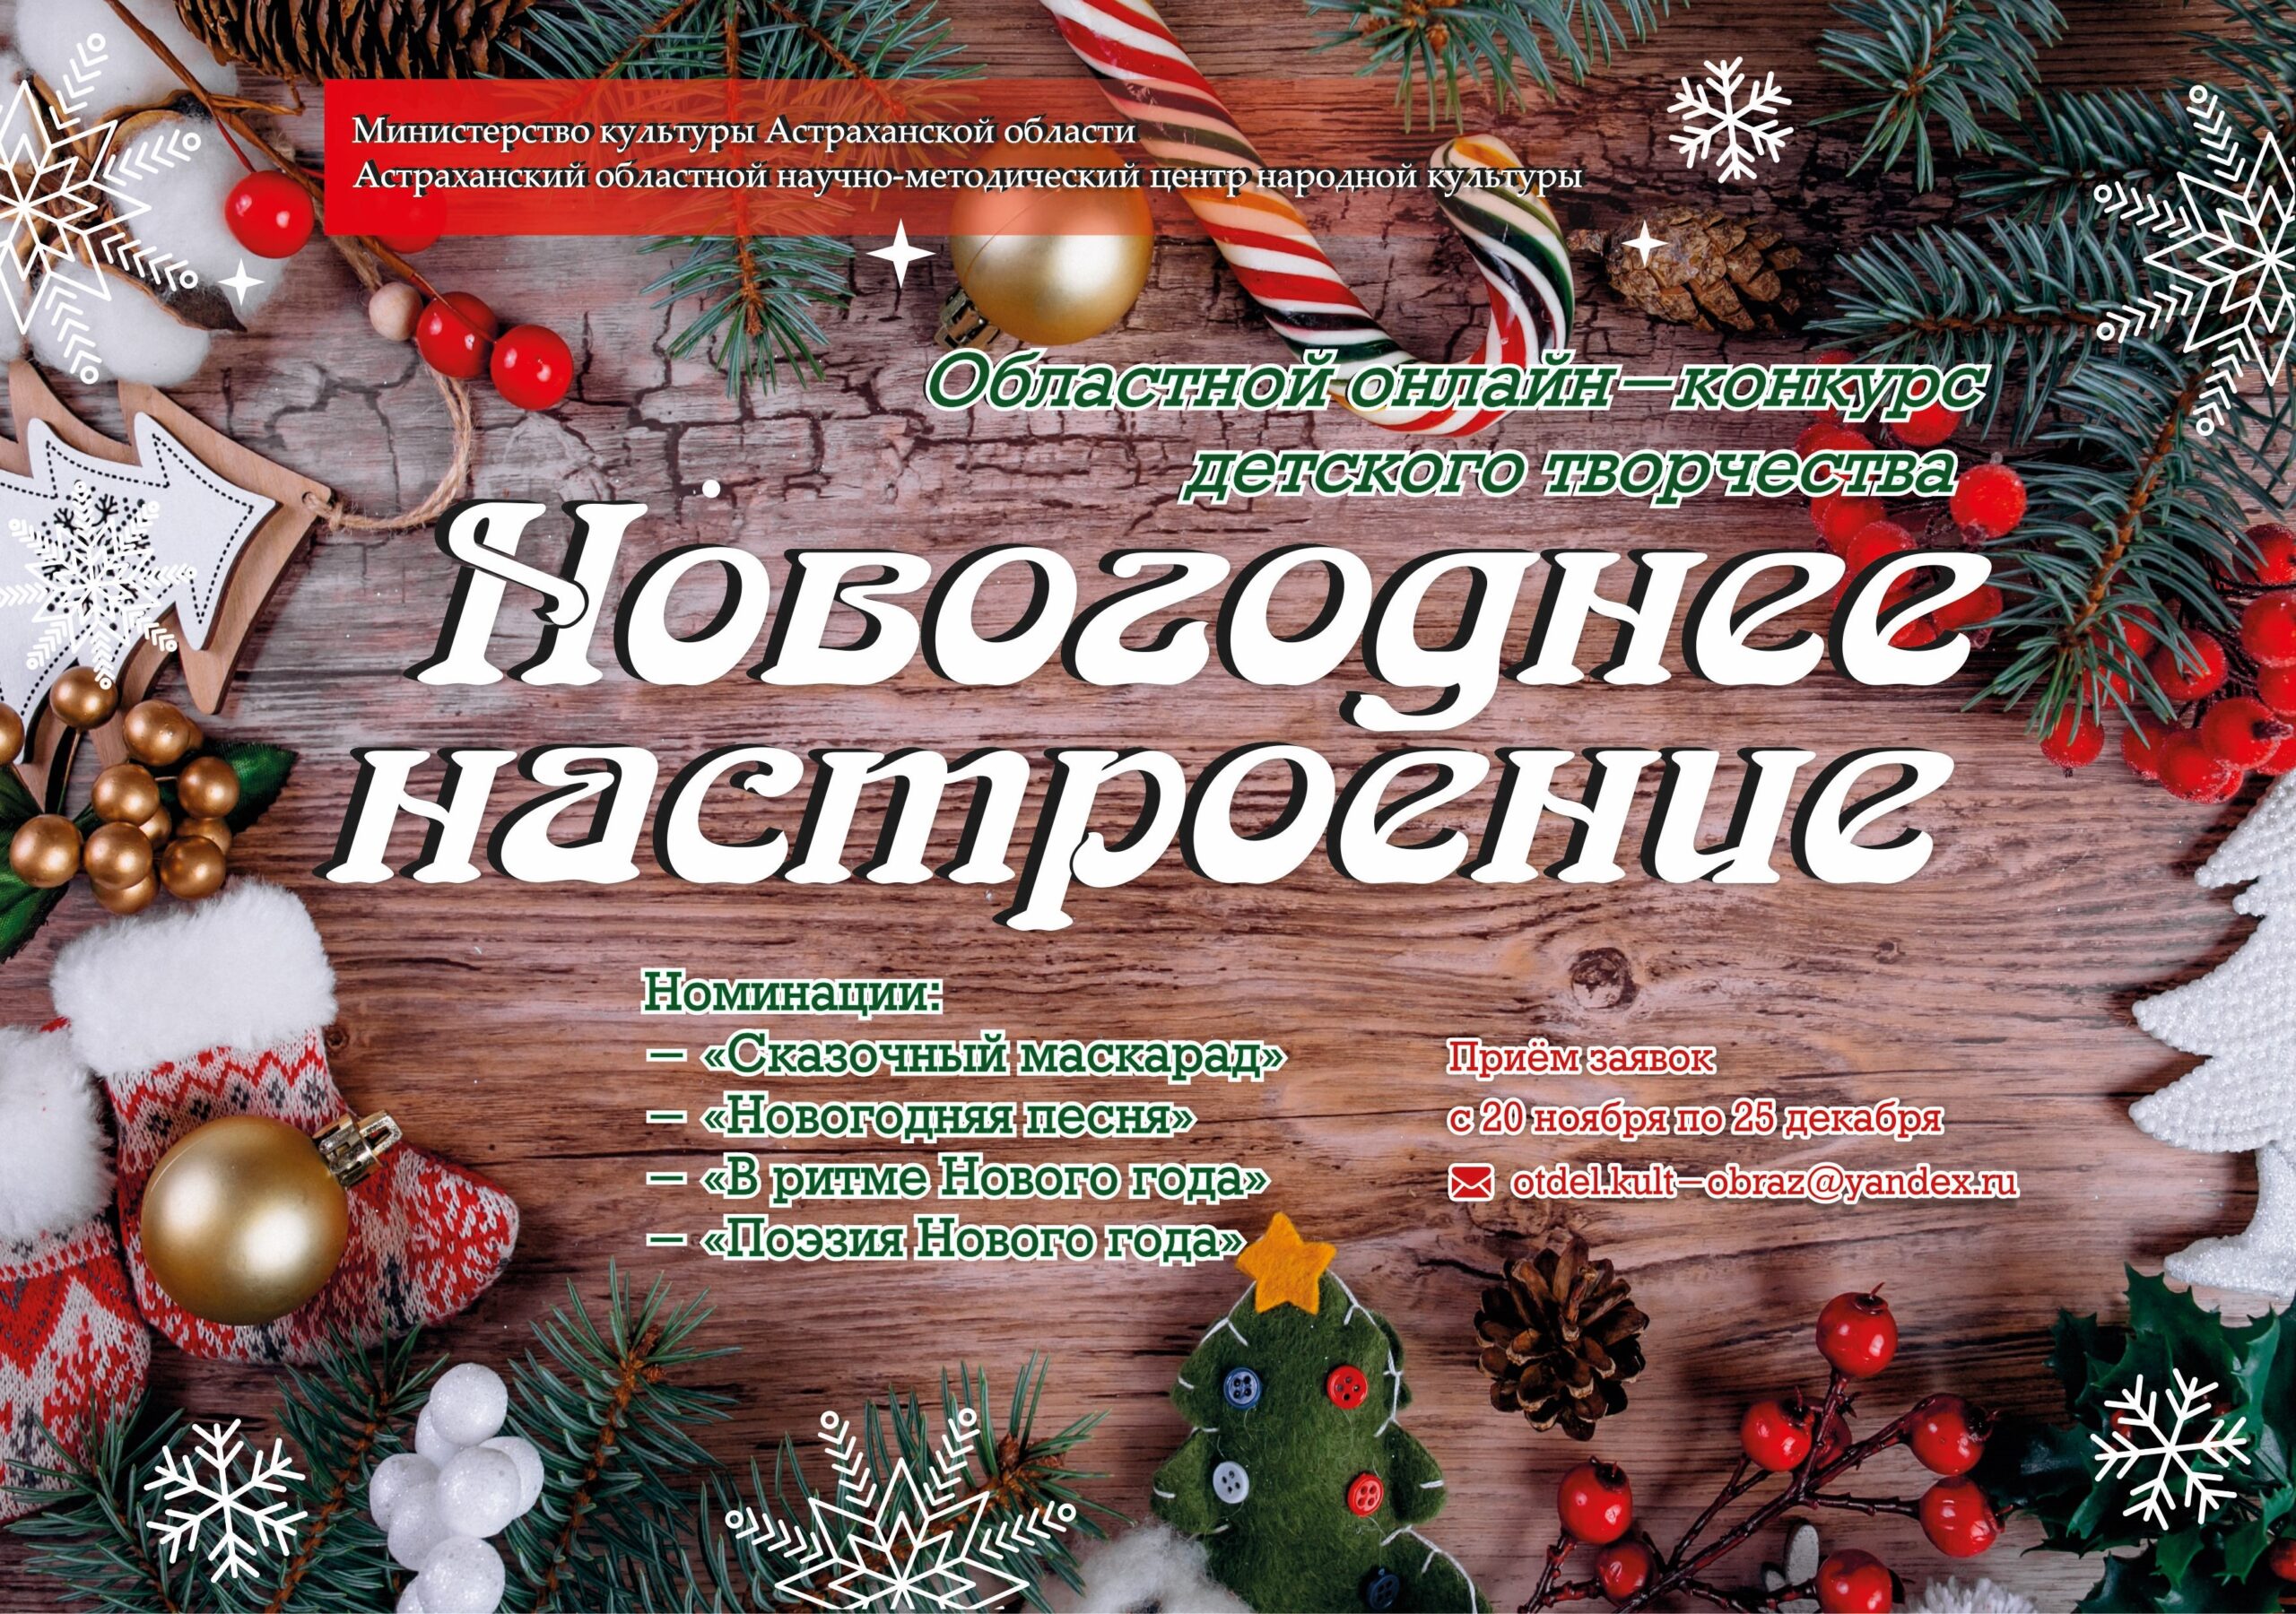 В Астрахани стартовал конкурс детского творчества «Новогоднее настроение»